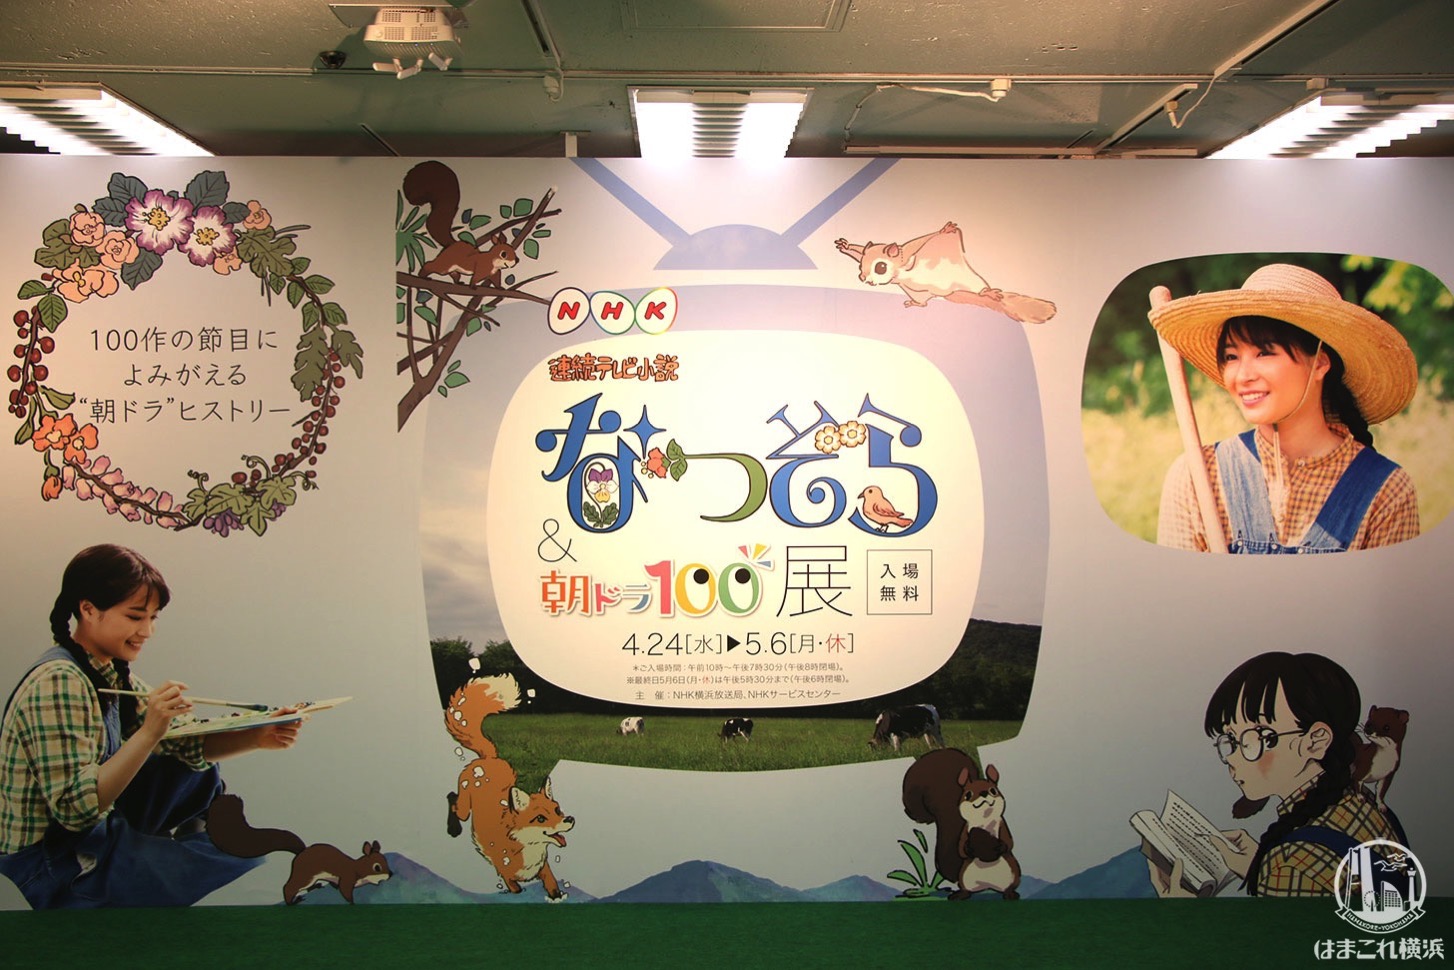 横浜高島屋で草刈正雄「なつぞら」「朝ドラ」の魅力語る、展覧会の見どころも